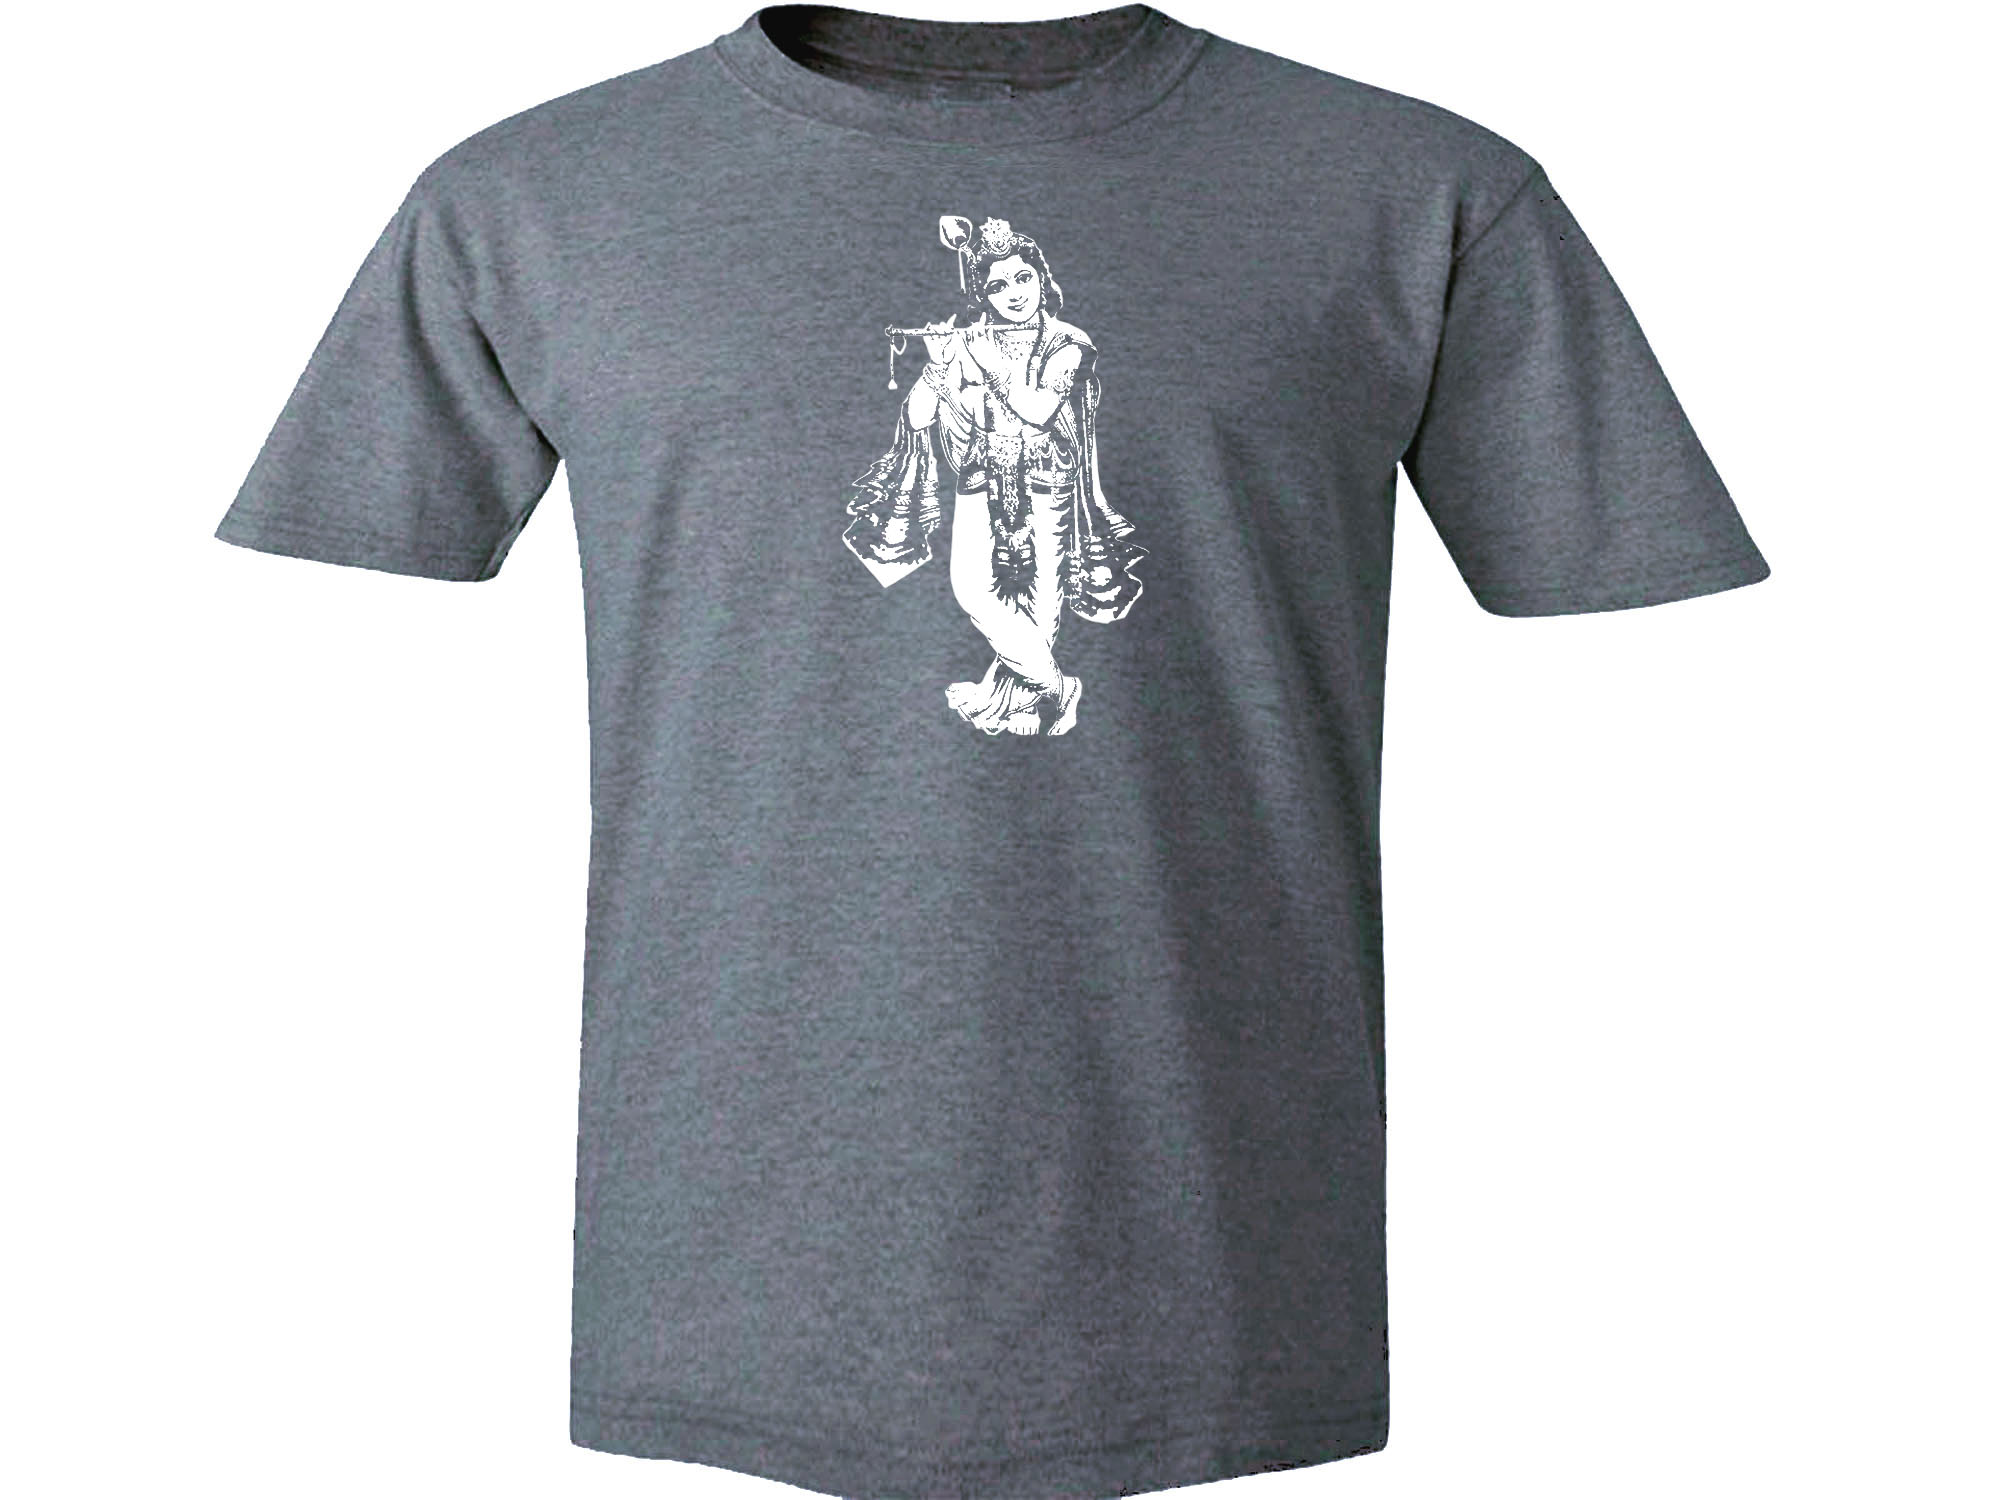 Buddhism Gods Krishna yoga meditation wear gray t shirt